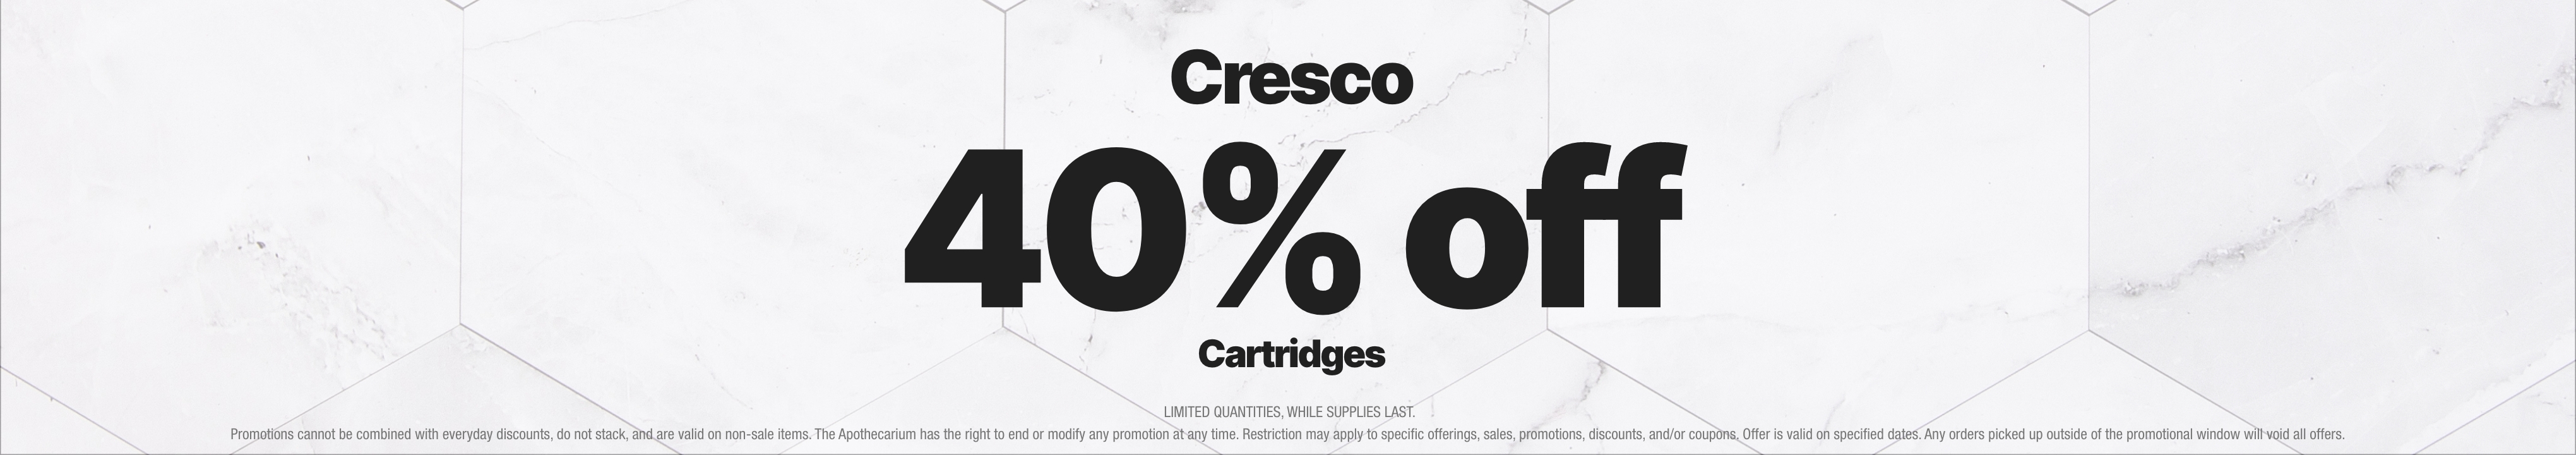 Cannabis Promo, Cannabis Sales, Cannabis Discounts, Cannabis on Sale, 40% Off Cresco Cartridges 